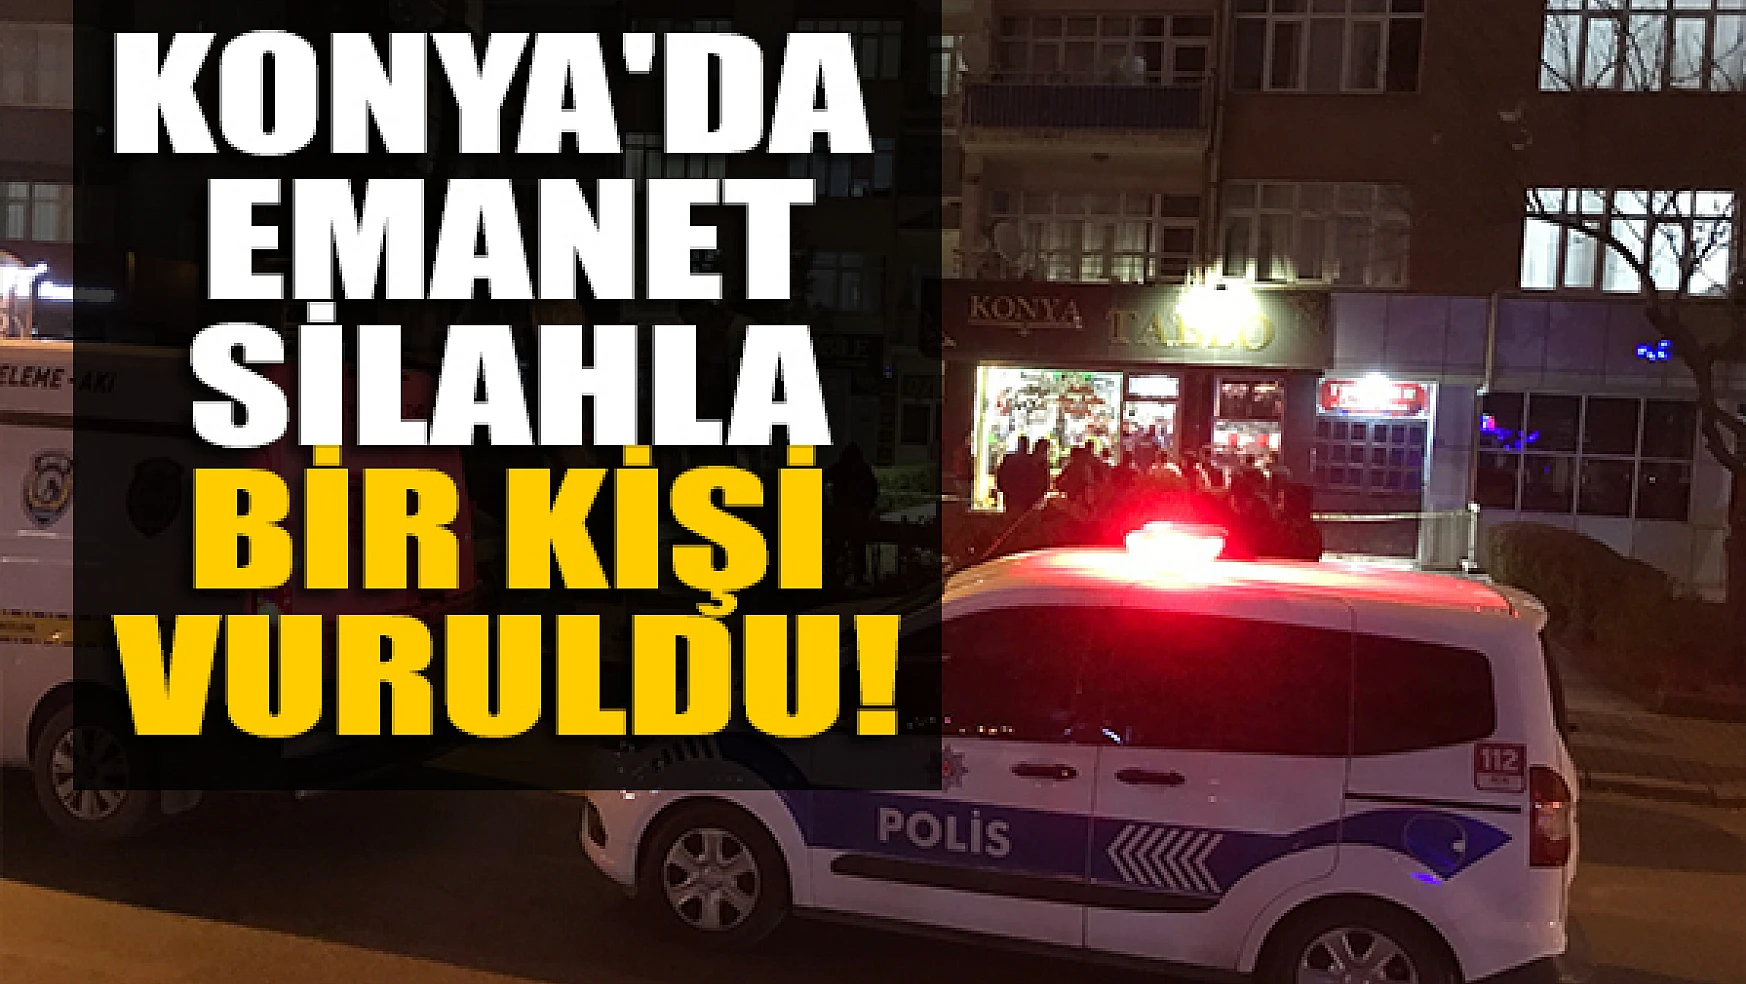 Konya'da emanet silahla bir kişi vuruldu!